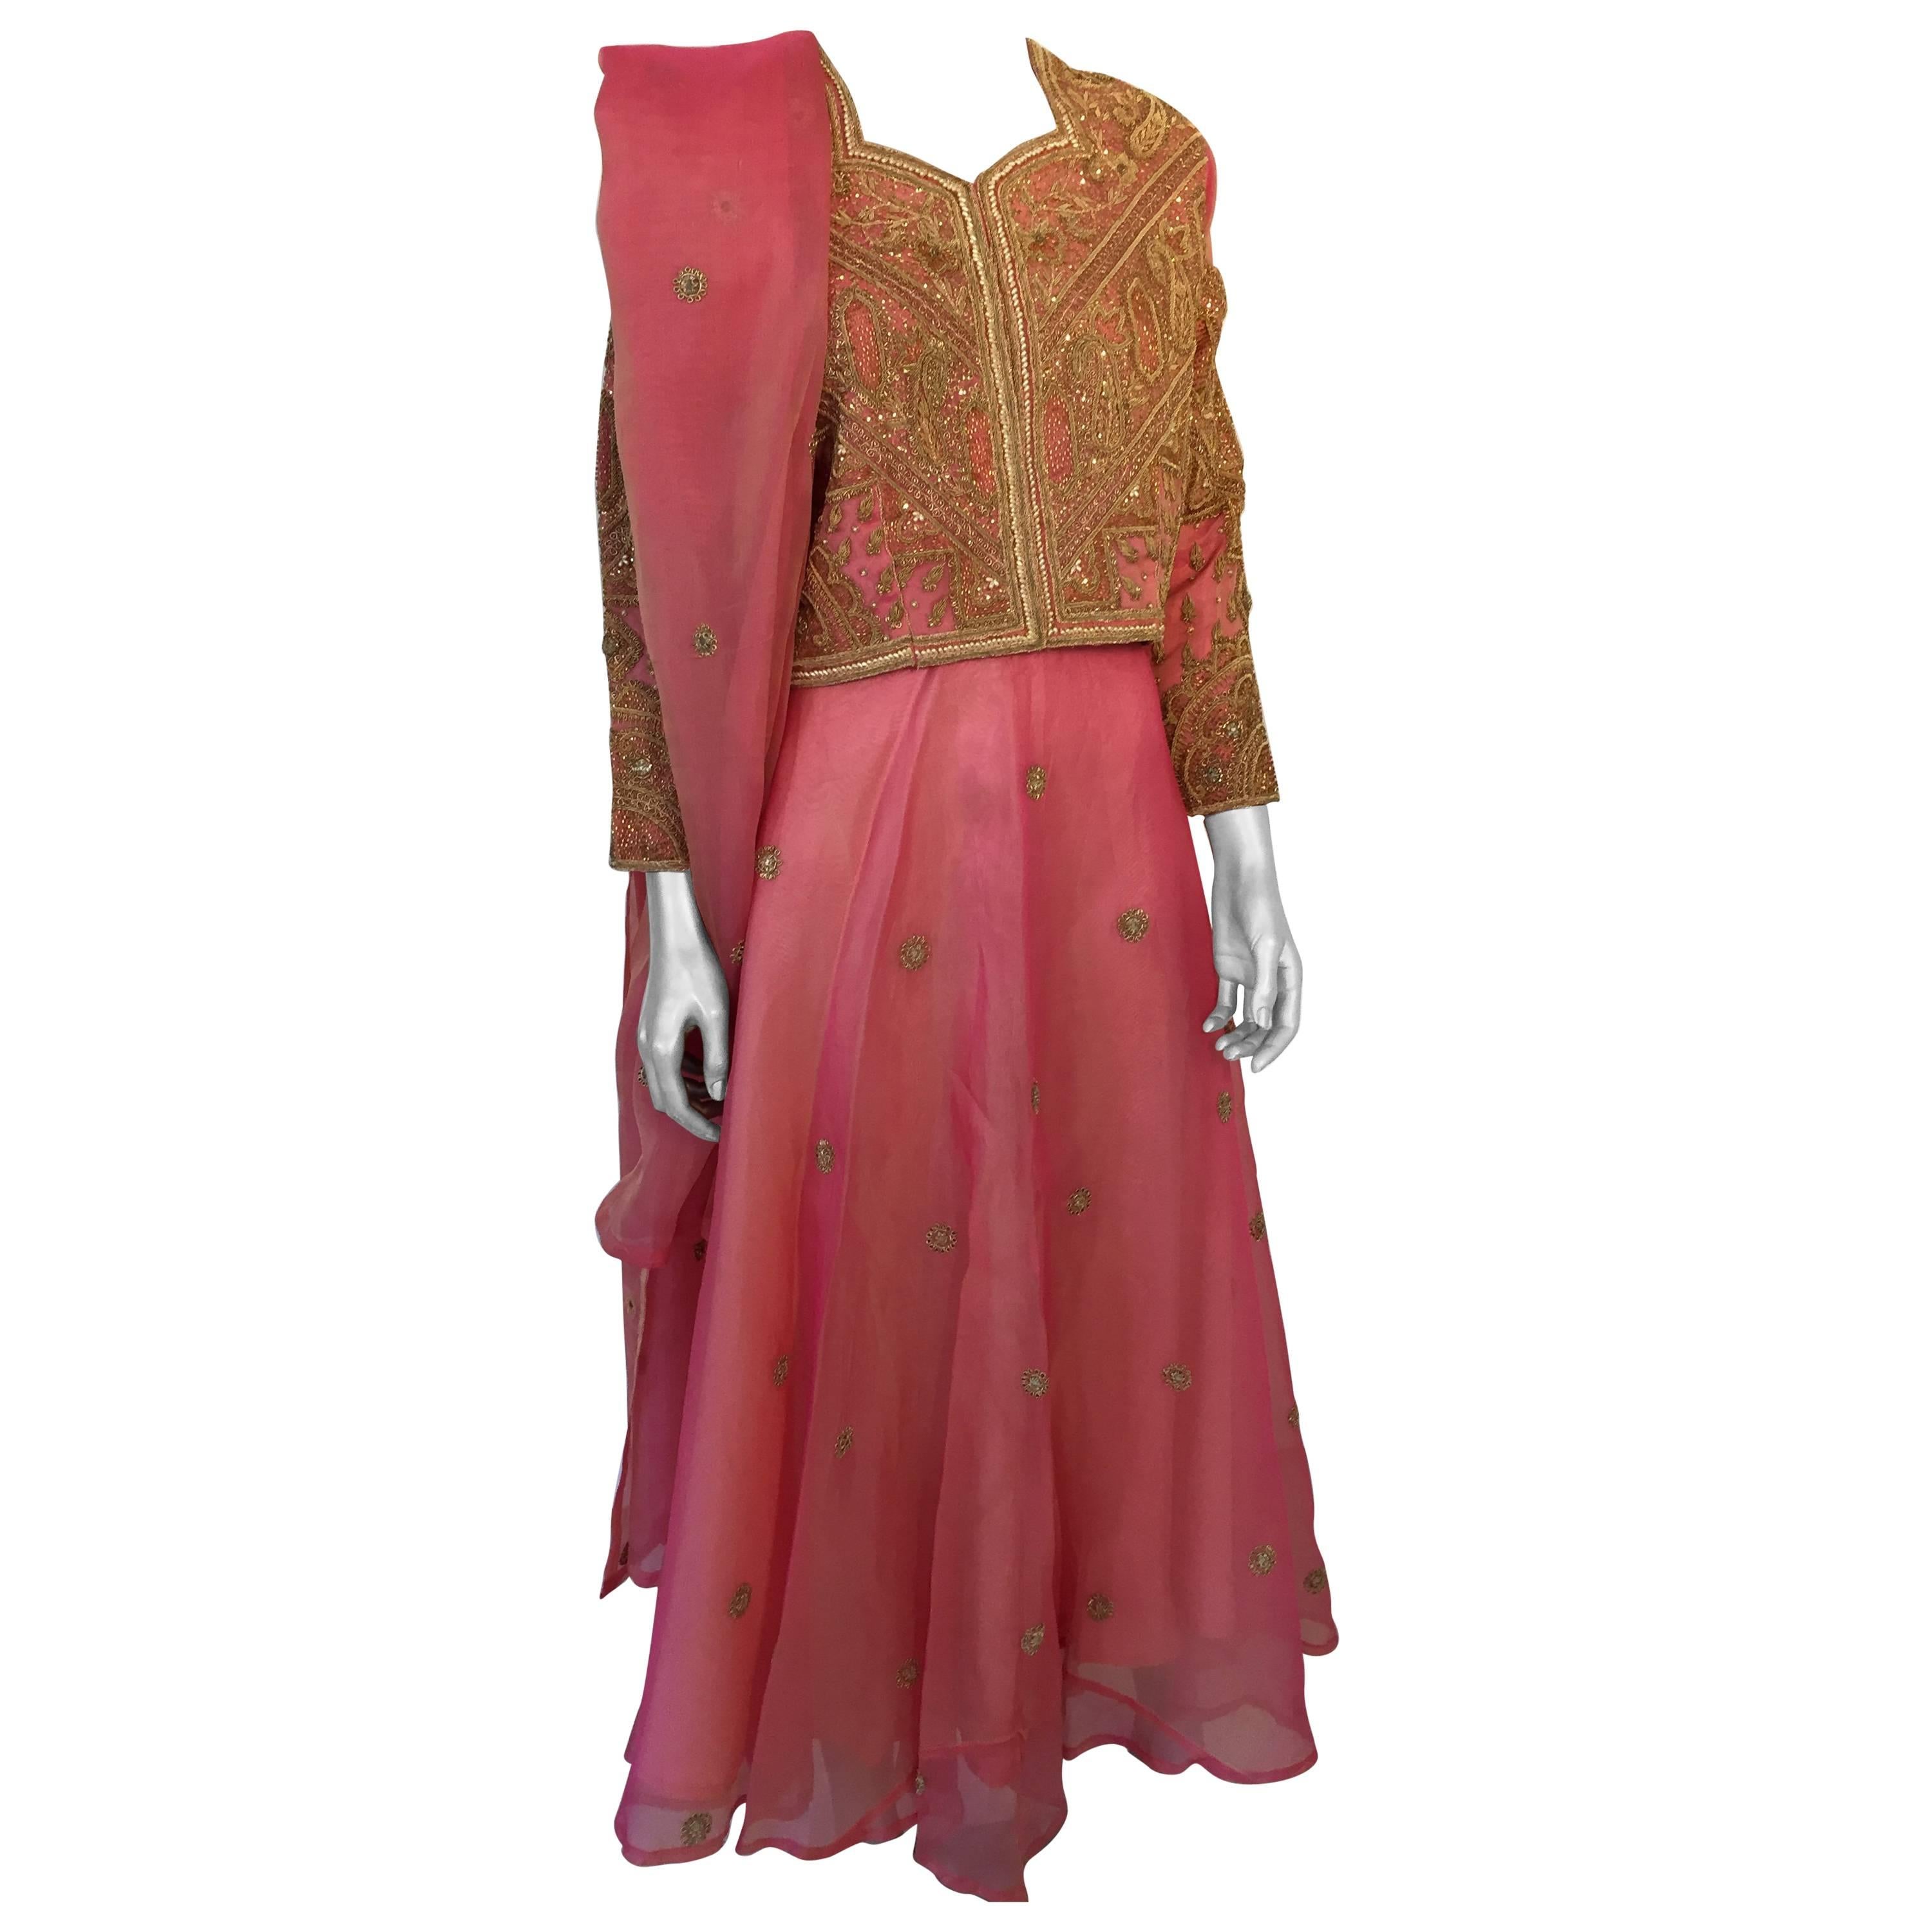 Robe de soirée en soie brodée rose et or 3 pièces Gilet, jupe et châle en vente